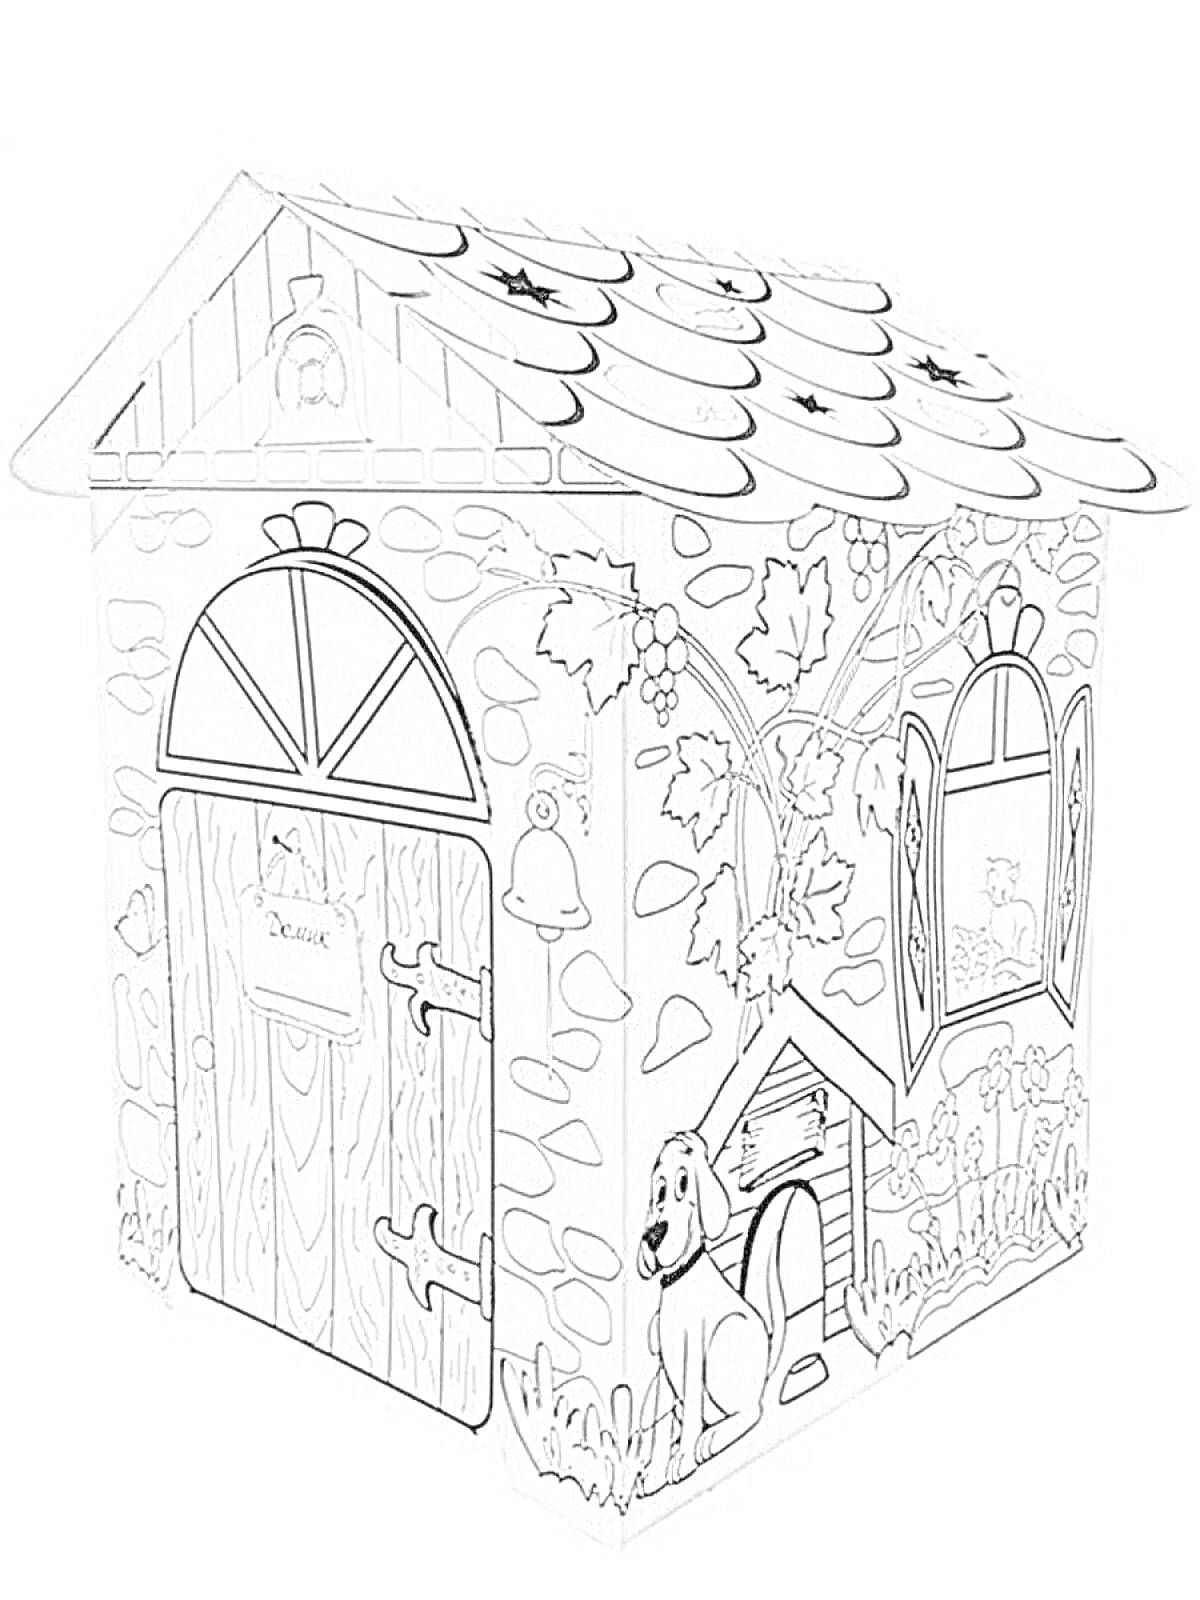 Картонный домик для раскрашивания с изображением двери, окон, собаки, кустарников, каменной кладки и крышами, покрытыми черепицей.